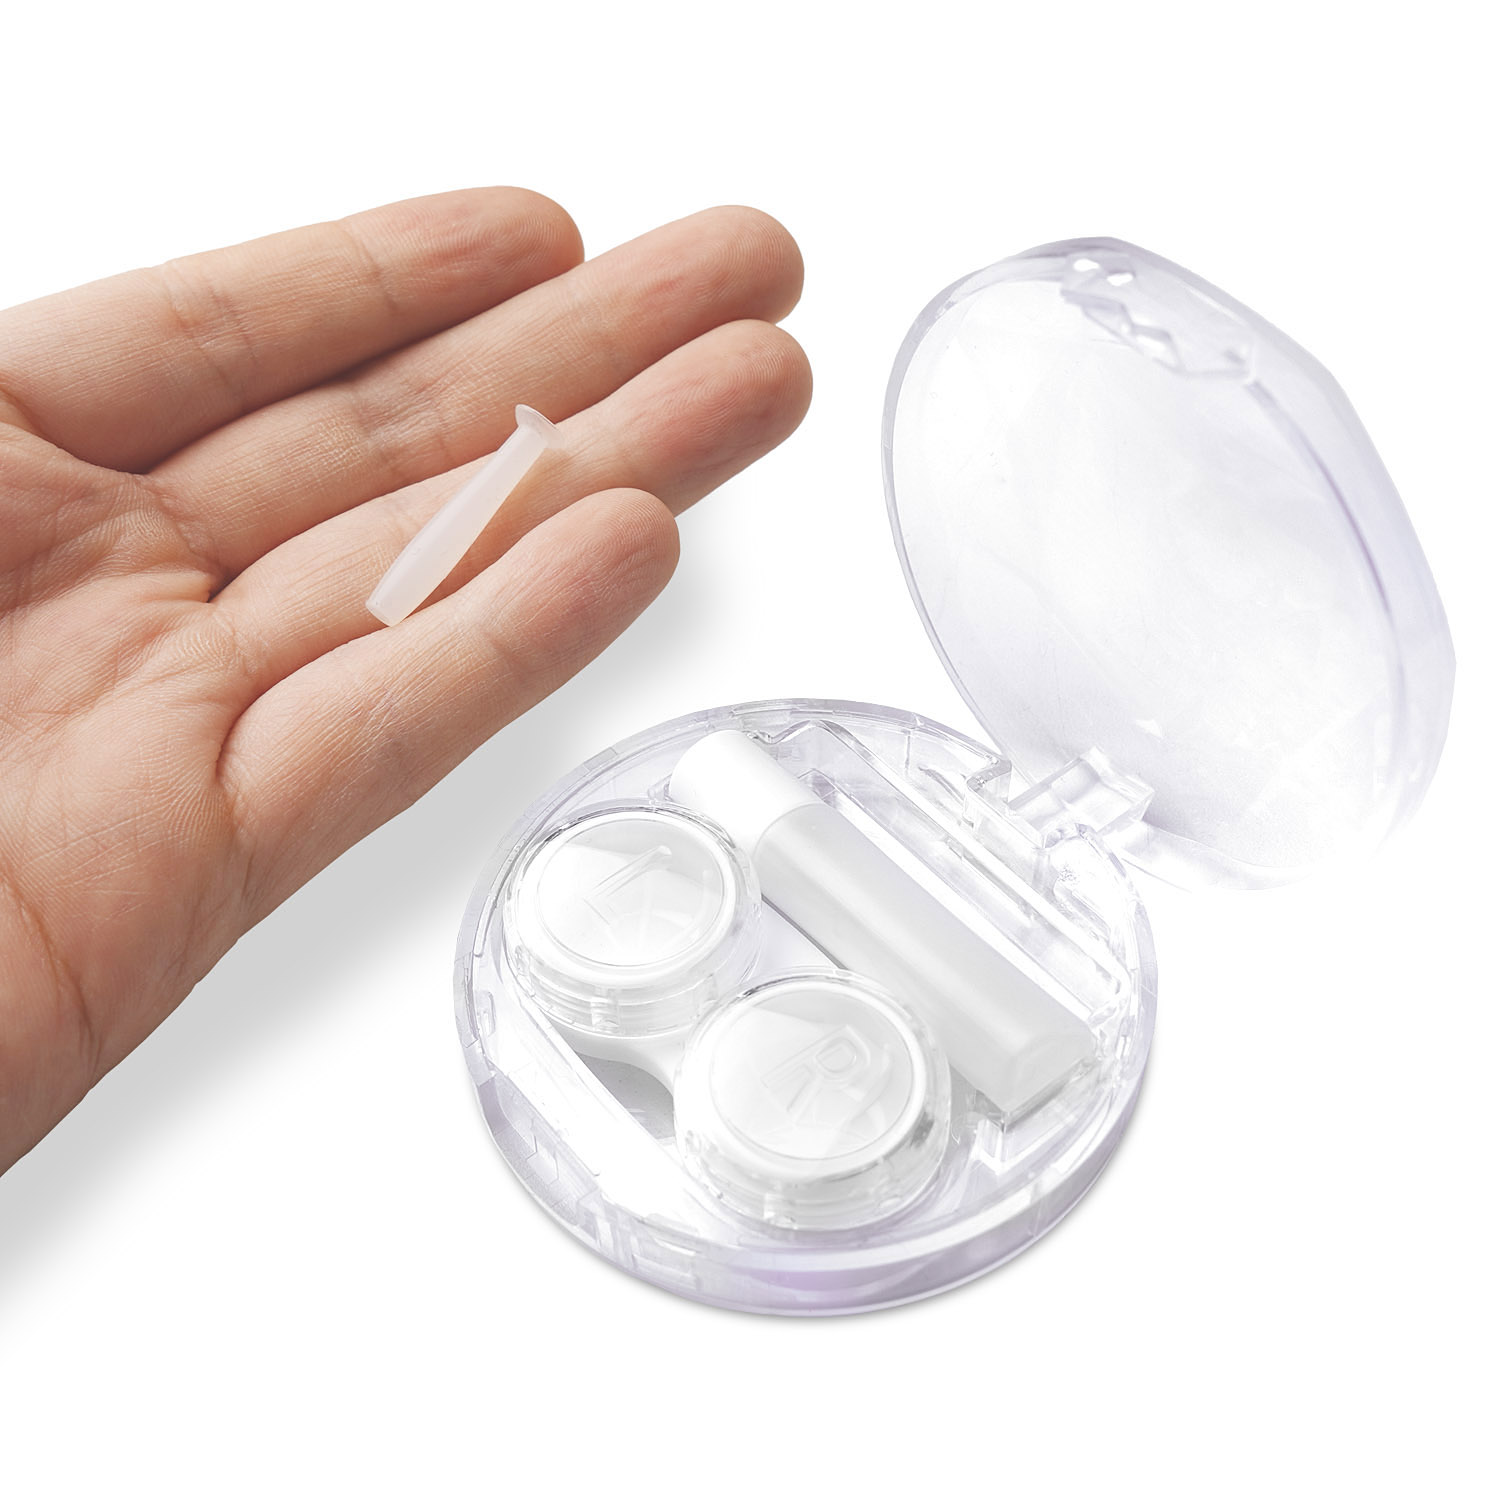 für Lösung-Behältnis Kontaktlinsen Kit Behälter(L+R), und Linsensauger, Kontaktlinsen WHITE 4-in-1 Set Travel mit 4in1 Case, Travel harte JB